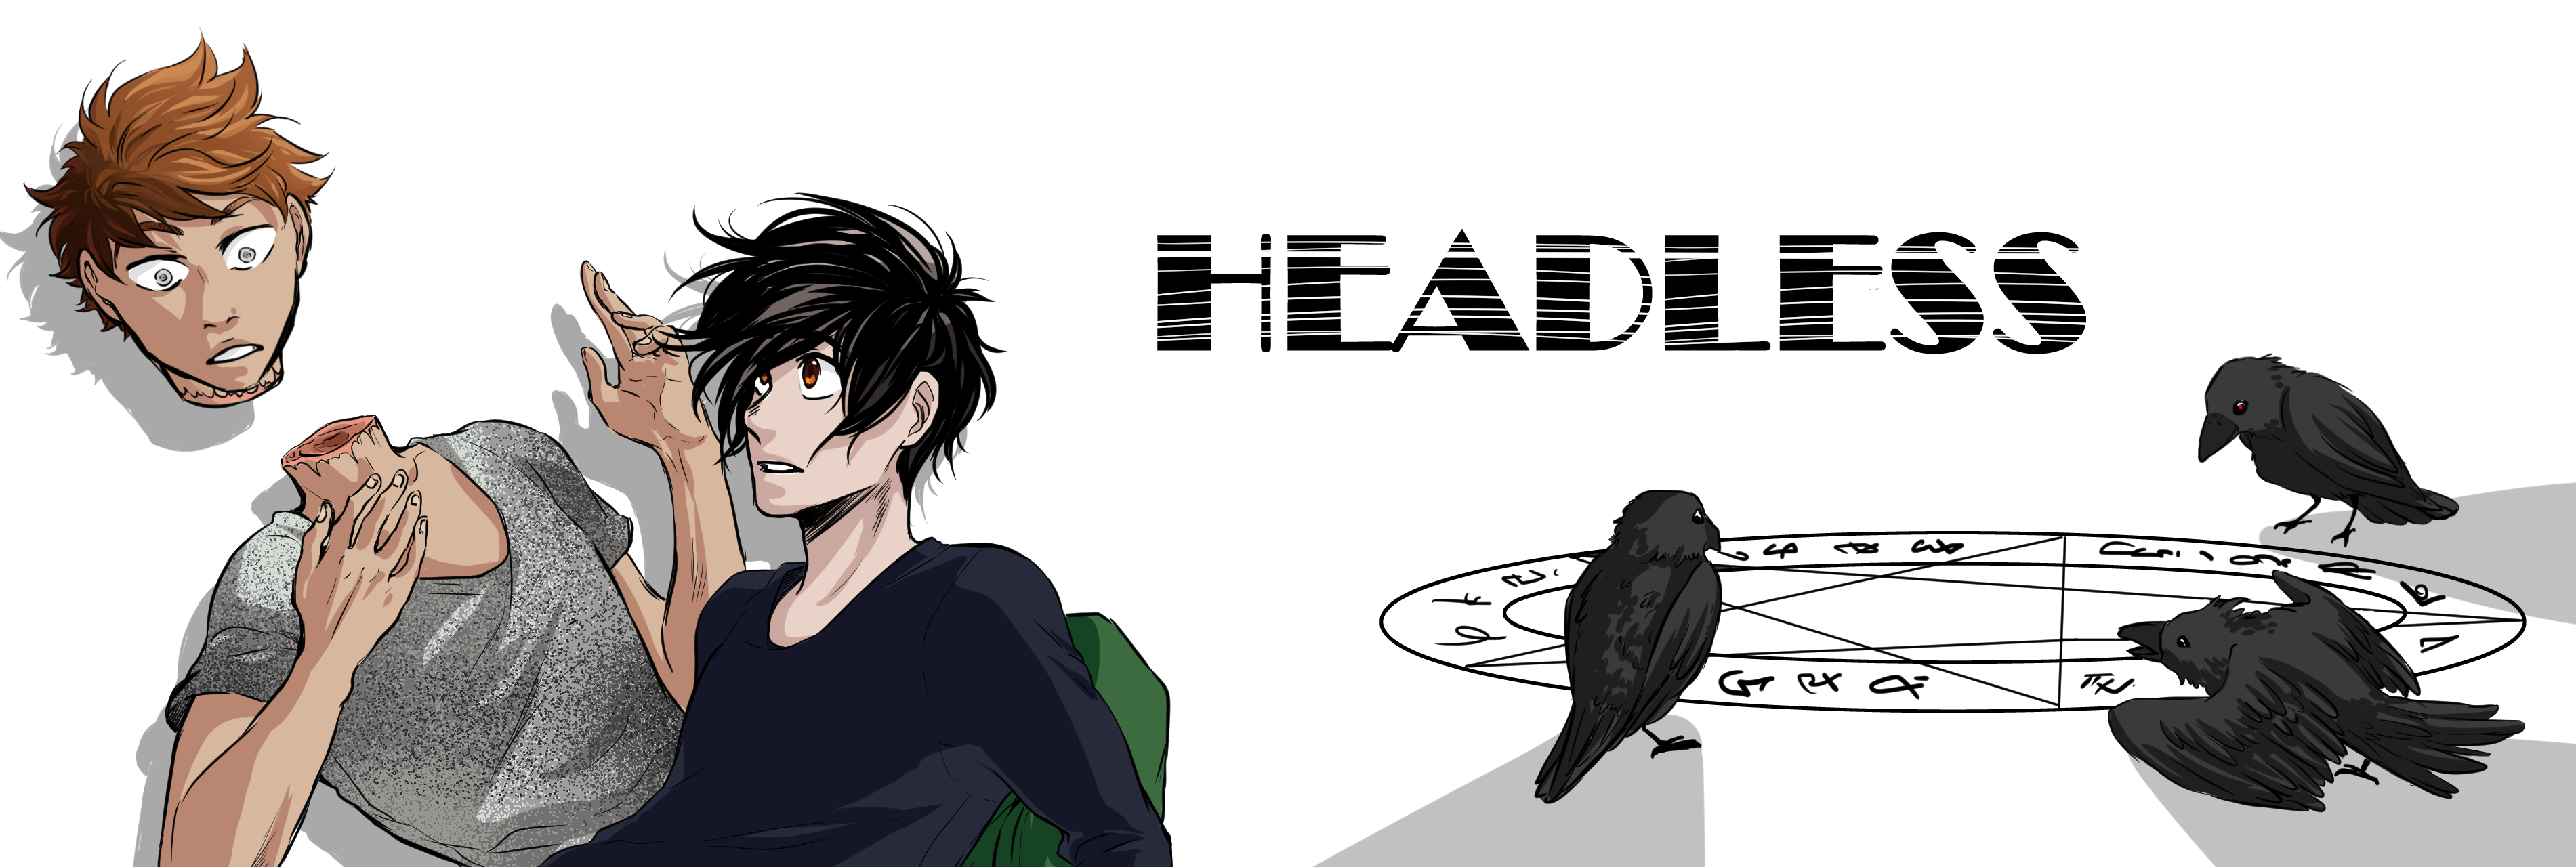 Headless webtoon